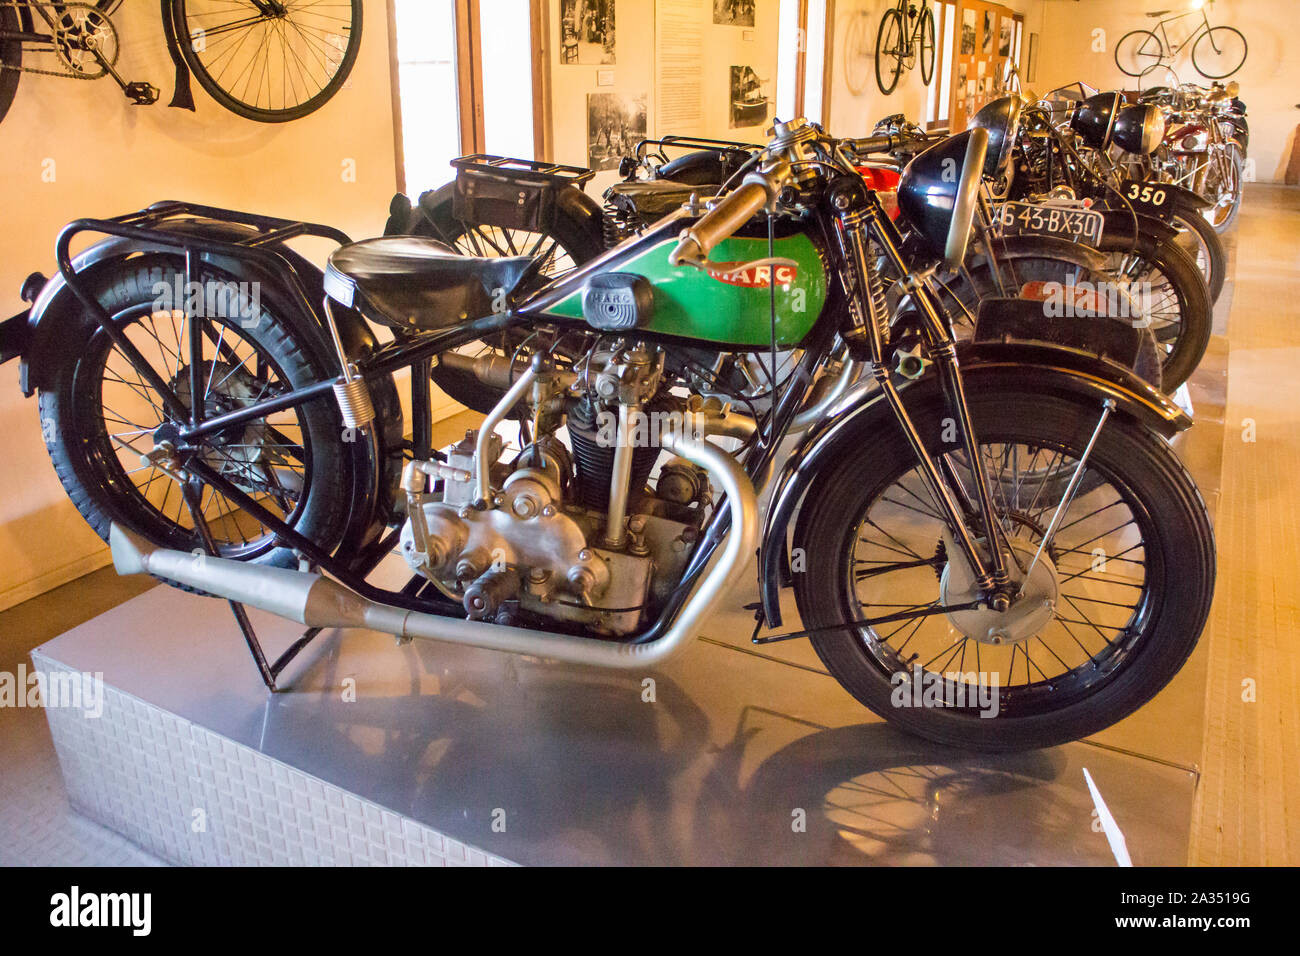 Musée de la Moto à Marseille (France) Motobike Museum in Marseilles : Marc  350cc 1930 (French Stock Photo - Alamy